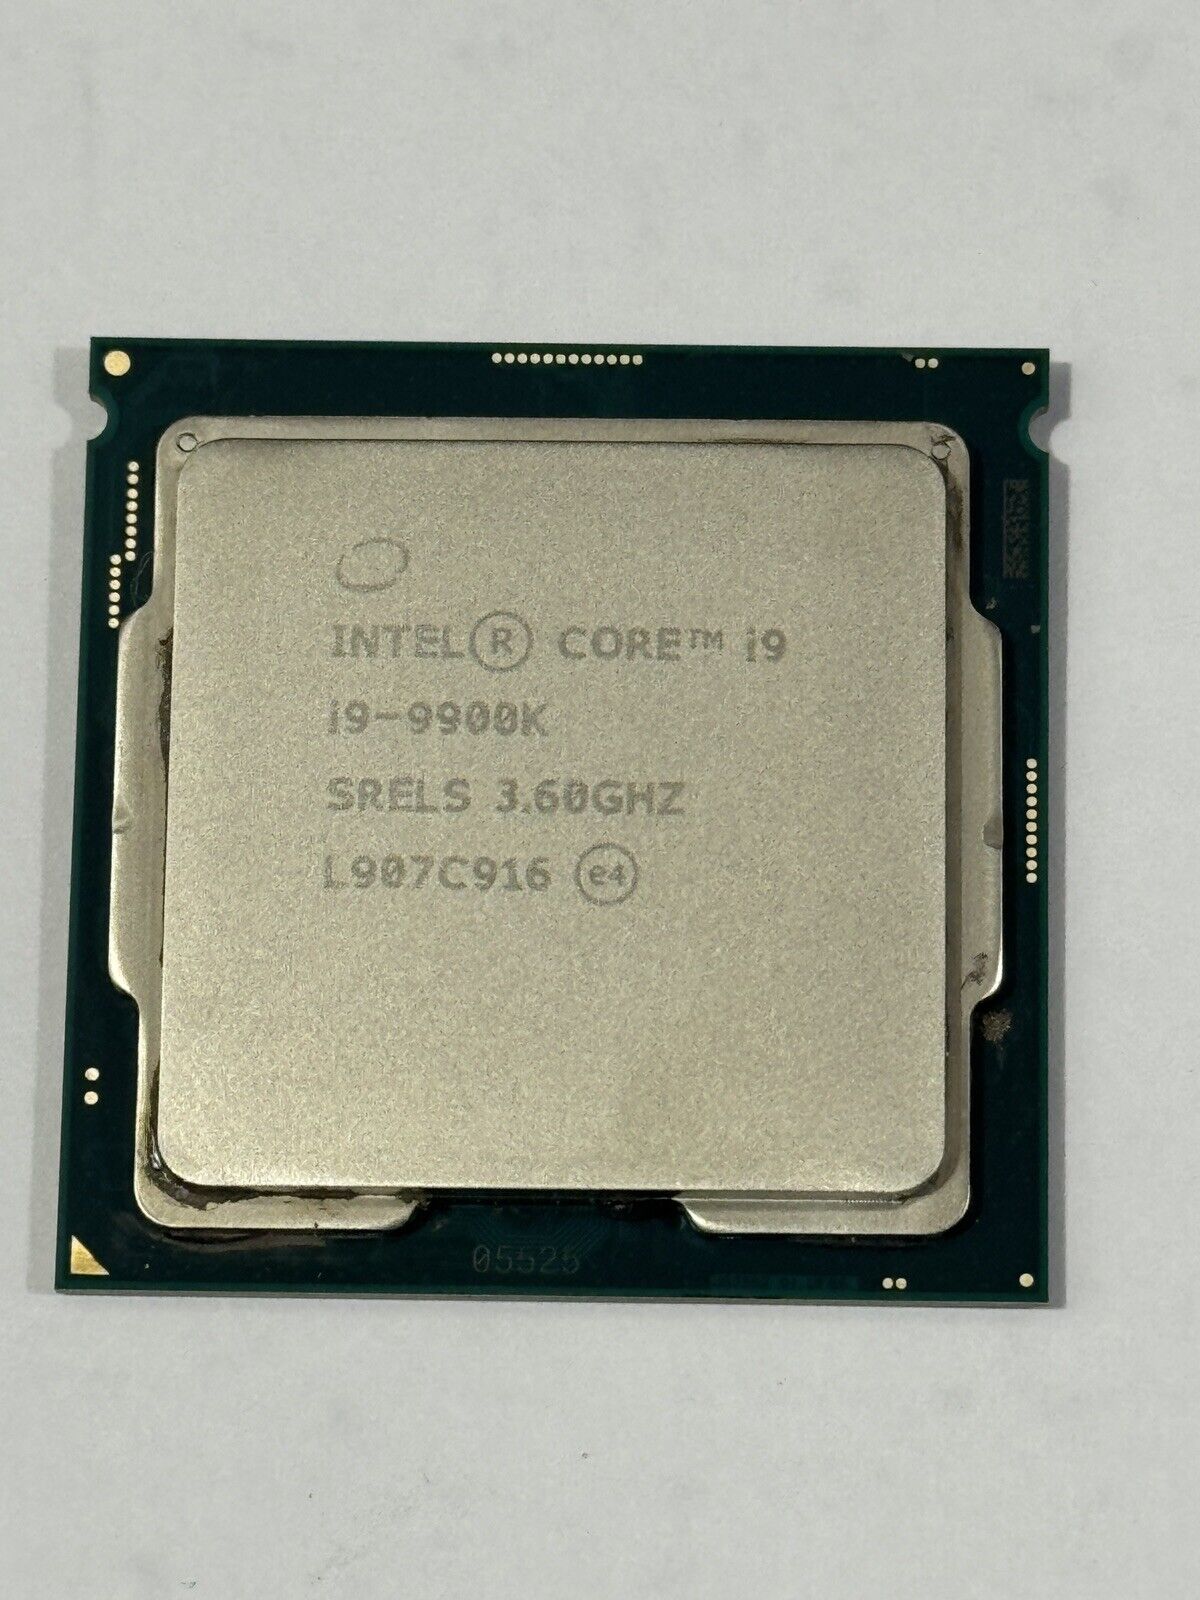 Intel Core i9-9900K (SRELS) 3.6GHz 8 Core Processor LGA1151